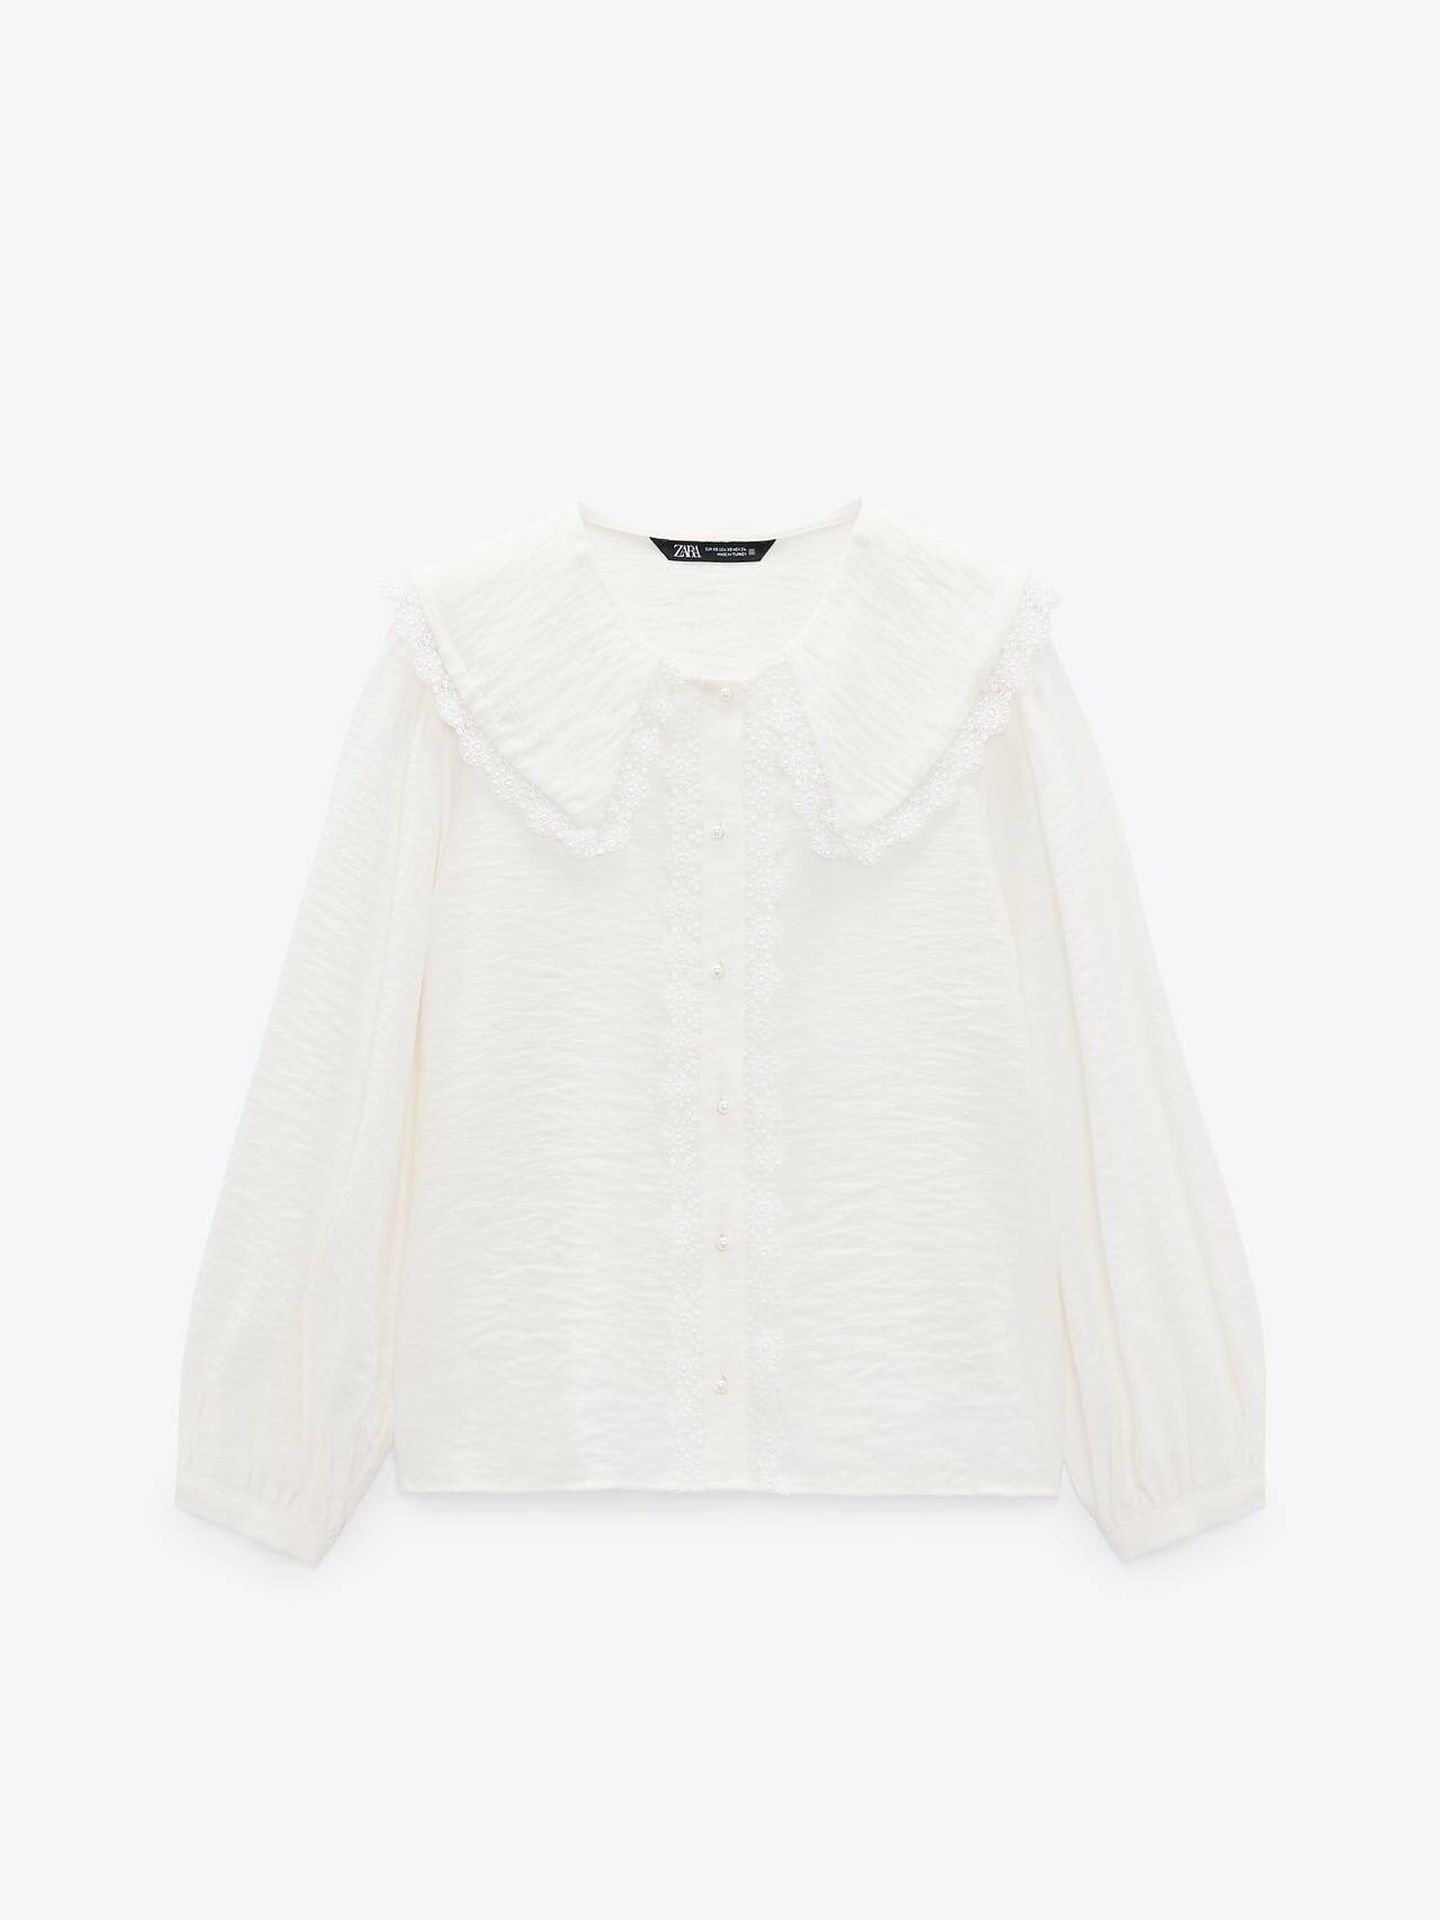 Camisa blanca de tendencia de Zara. (Cortesía)